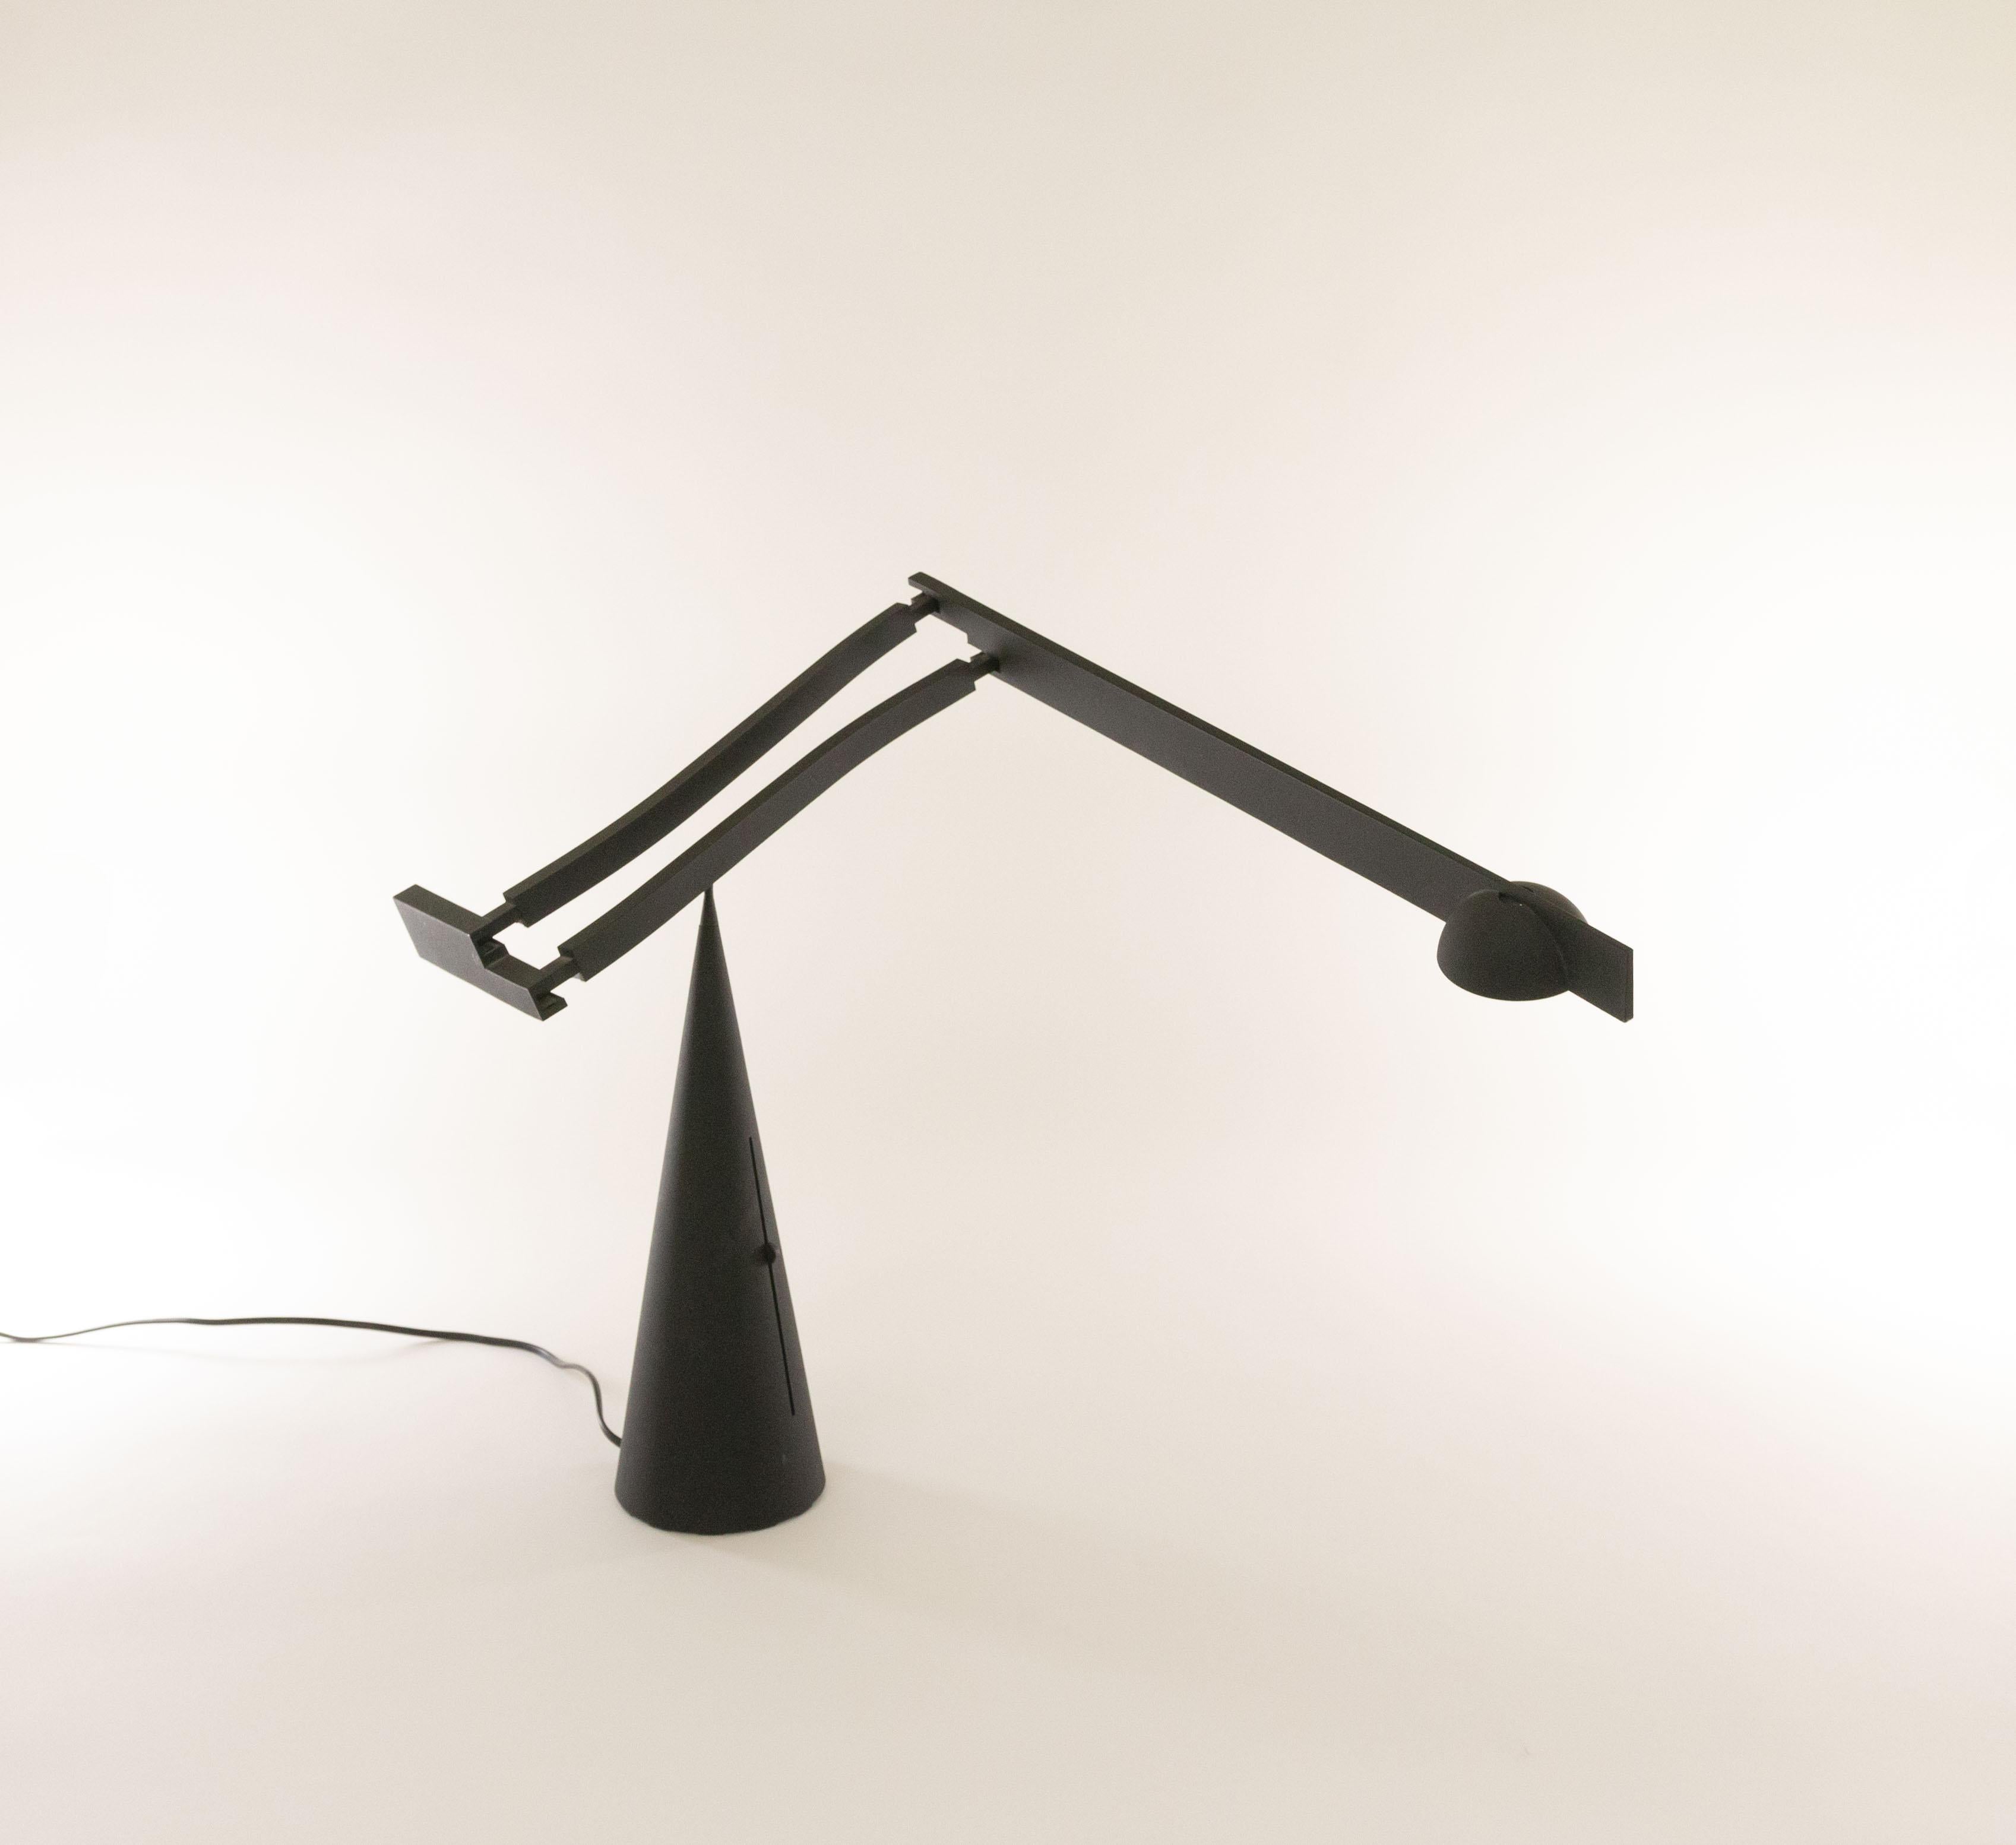 Lampe de table Tabla de Mario Barbaglia et Marco MarCo pour Italiana Luce, 1988 - 1990.

Un design sculptural exceptionnel avec un bras réglable et extensible qui pivote gracieusement sur le pic de la base conique. Le transformateur de cette lampe